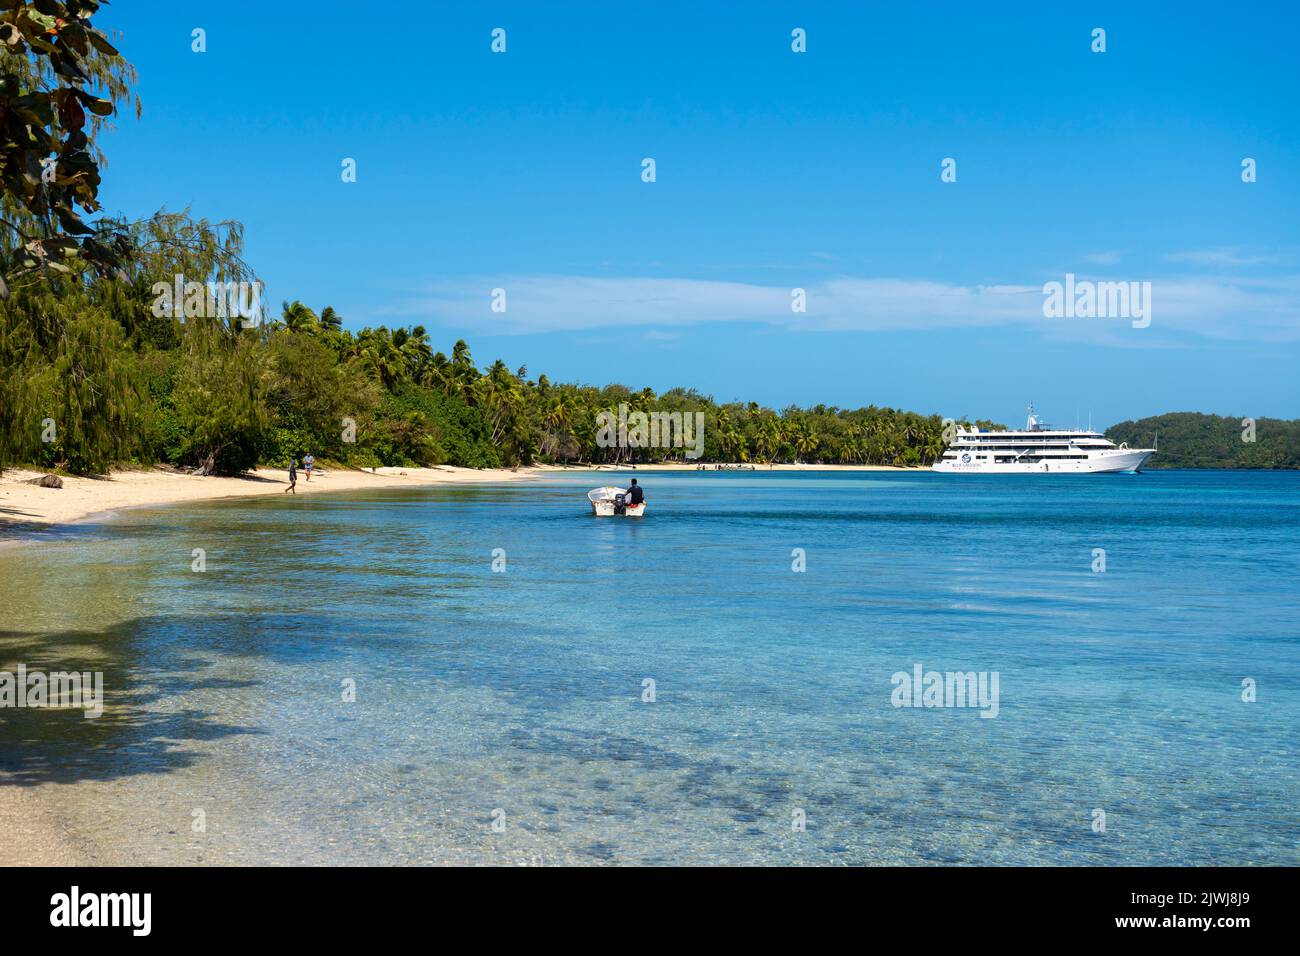 Cruise ship anchored in Blue Lagoon off tropical beach with clear blue water, Nanuya Island, Yasawa Group, Fiji Stock Photo